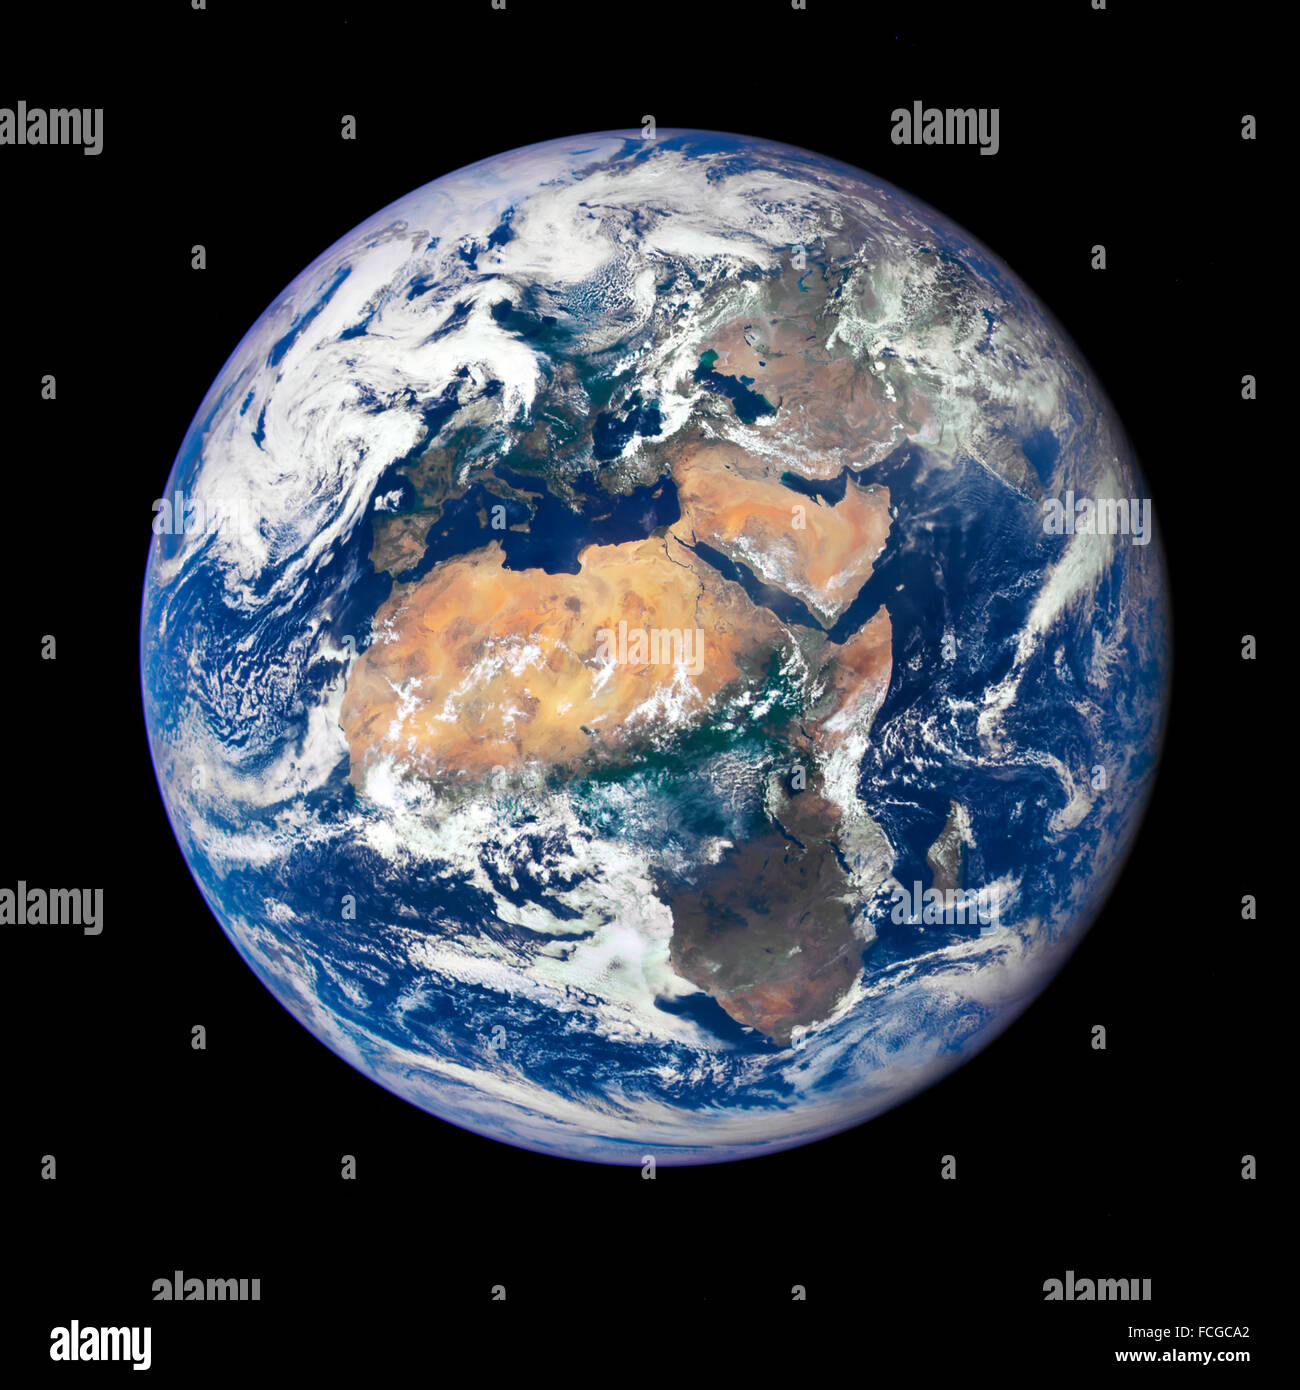 Imagen de la Tierra tomada el 29 de julio de 2015 por una cámara de la NASA en el espacio profundo clima DSCOVR (Observatorio) satélite. La imagen es desde un punto de vista de un millón de kilómetros de la tierra, y es una de las primeras tomadas por la NASA de la tierra de la Cámara de imagen policromática (EPIC) Foto de stock